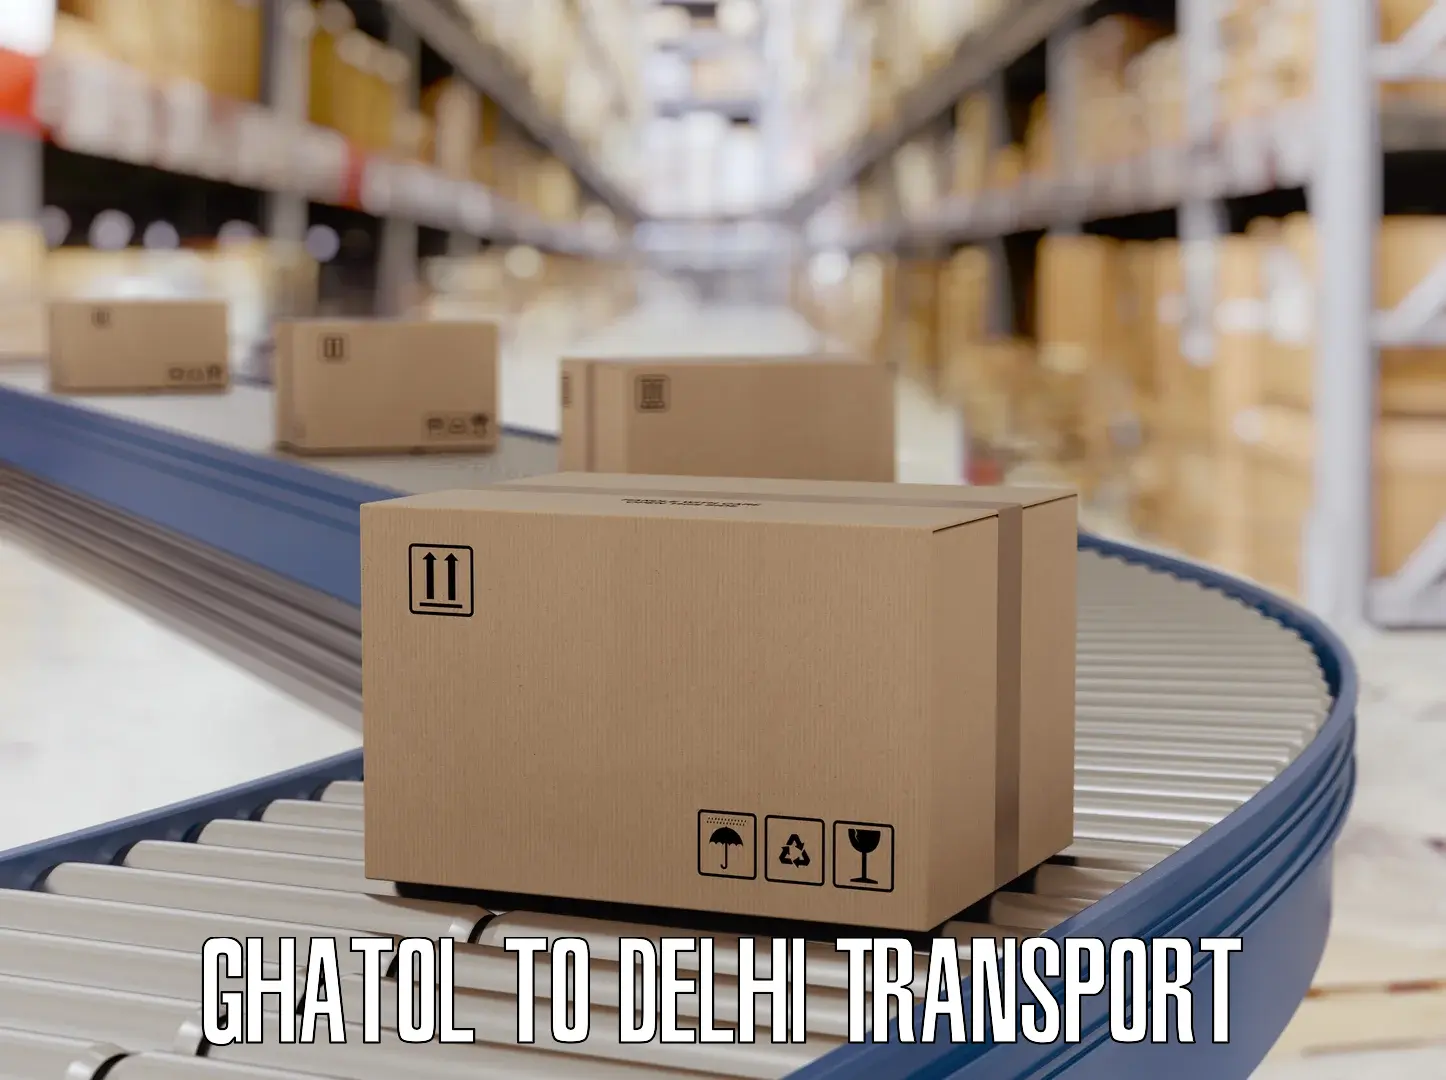 Intercity transport Ghatol to Jawaharlal Nehru University New Delhi